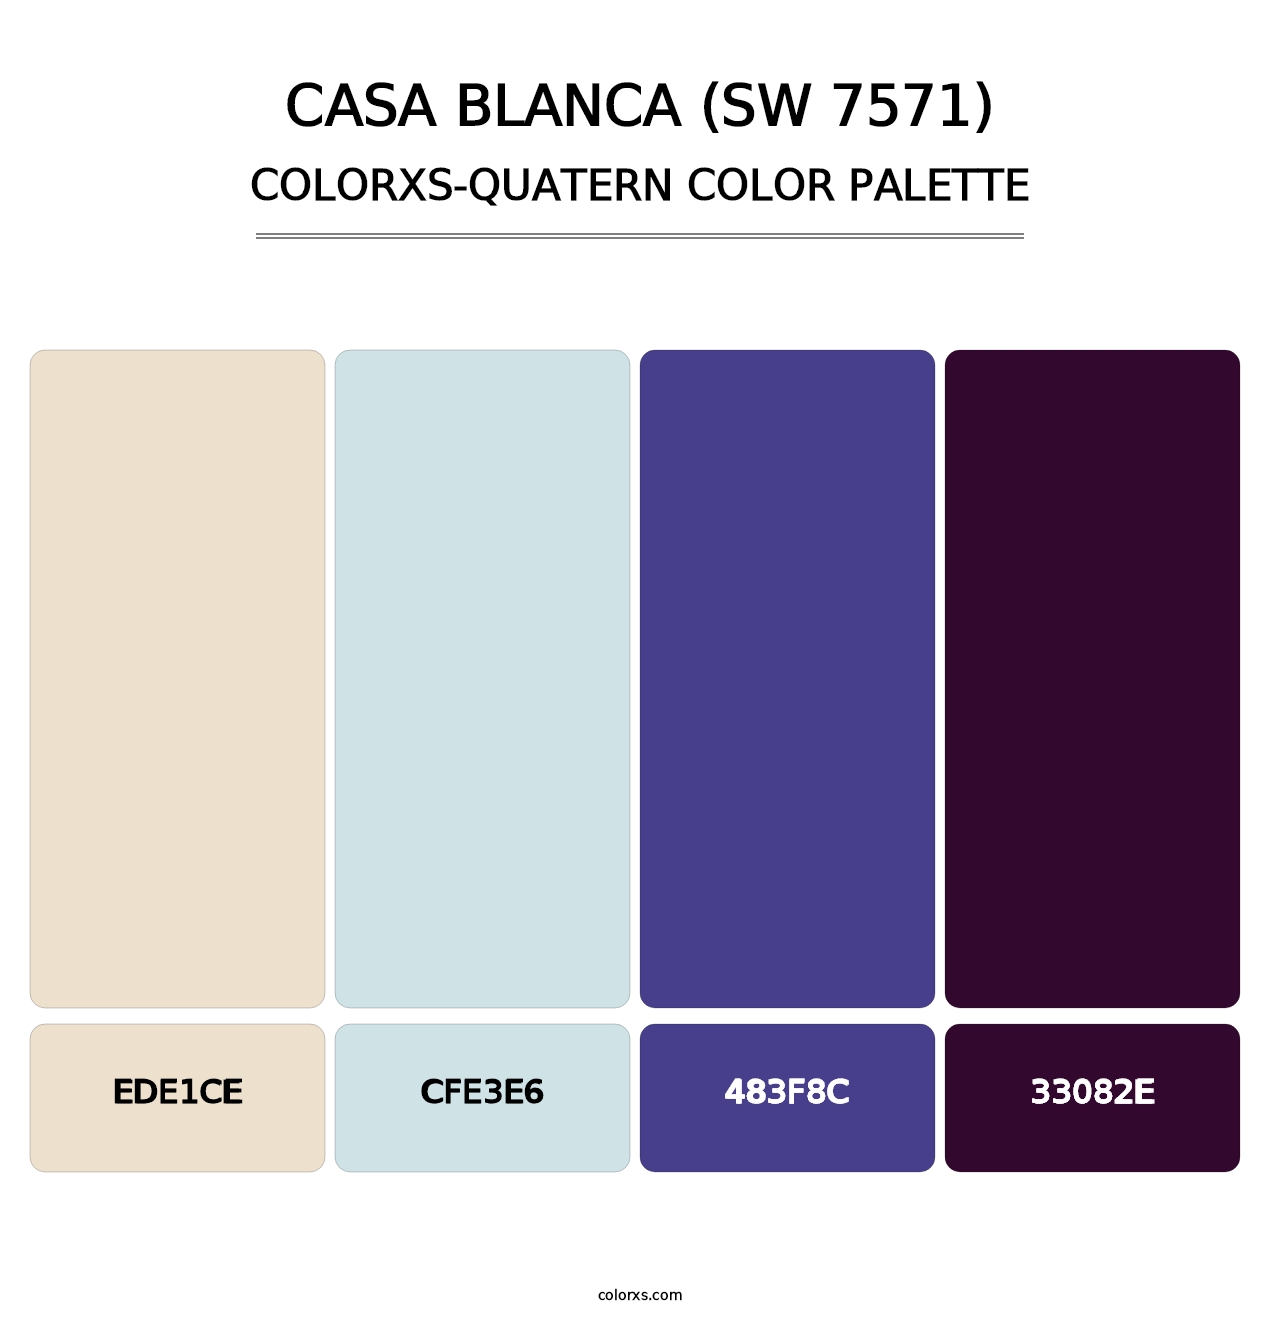 Casa Blanca (SW 7571) - Colorxs Quatern Palette